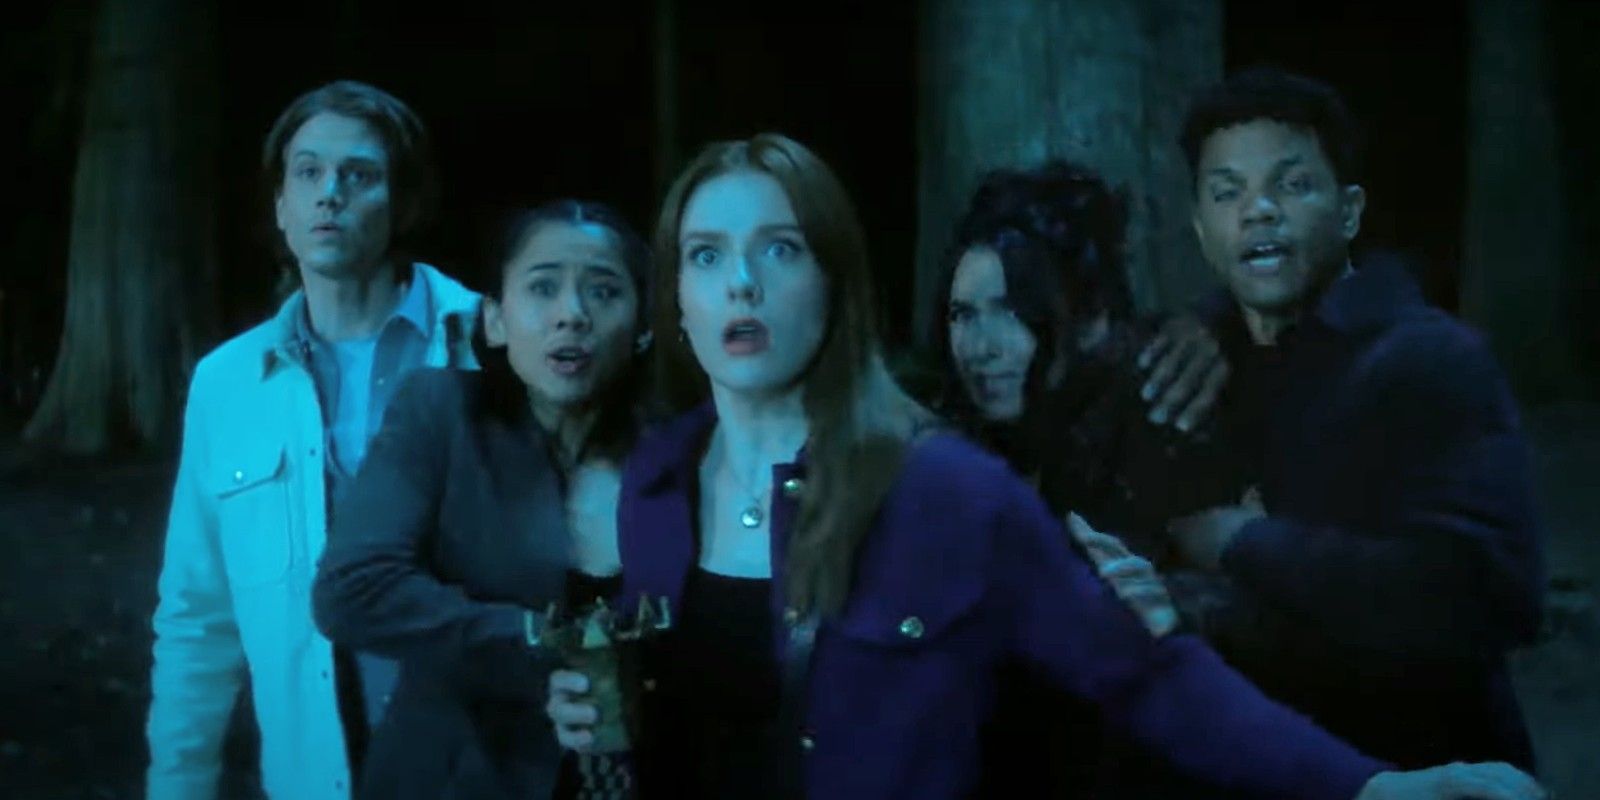 Nancy and her friends looking scared in Nancy Drew season 4 trailer